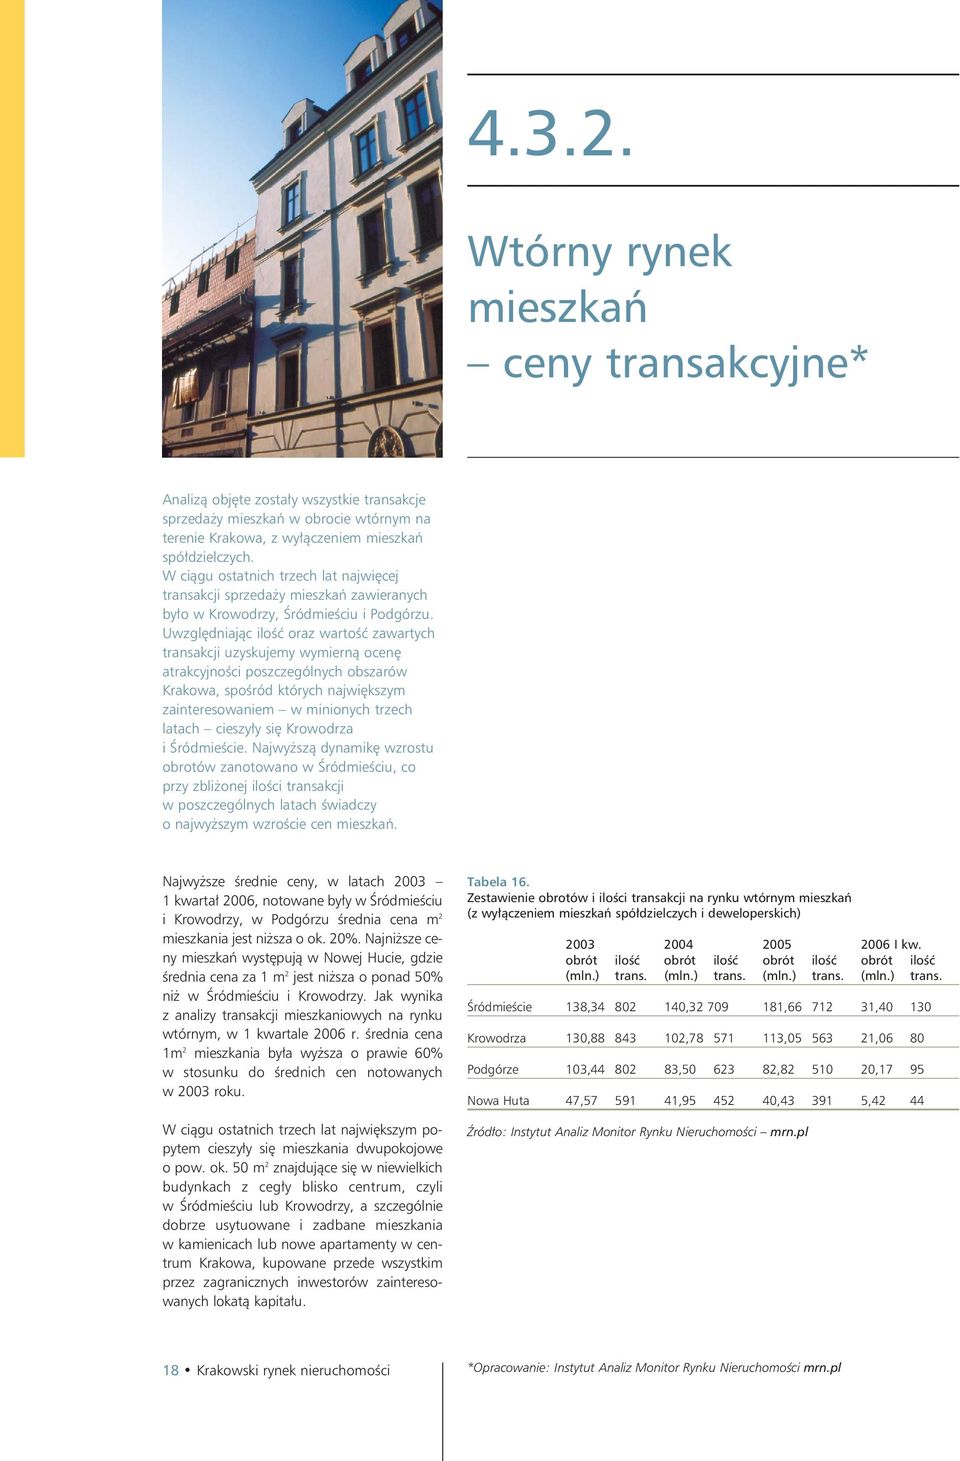 Uwzględniając ilość oraz wartość zawartych transakcji uzyskujemy wymierną ocenę atrakcyjności poszczególnych obszarów Krakowa, spośród których największym zainteresowaniem w minionych trzech latach